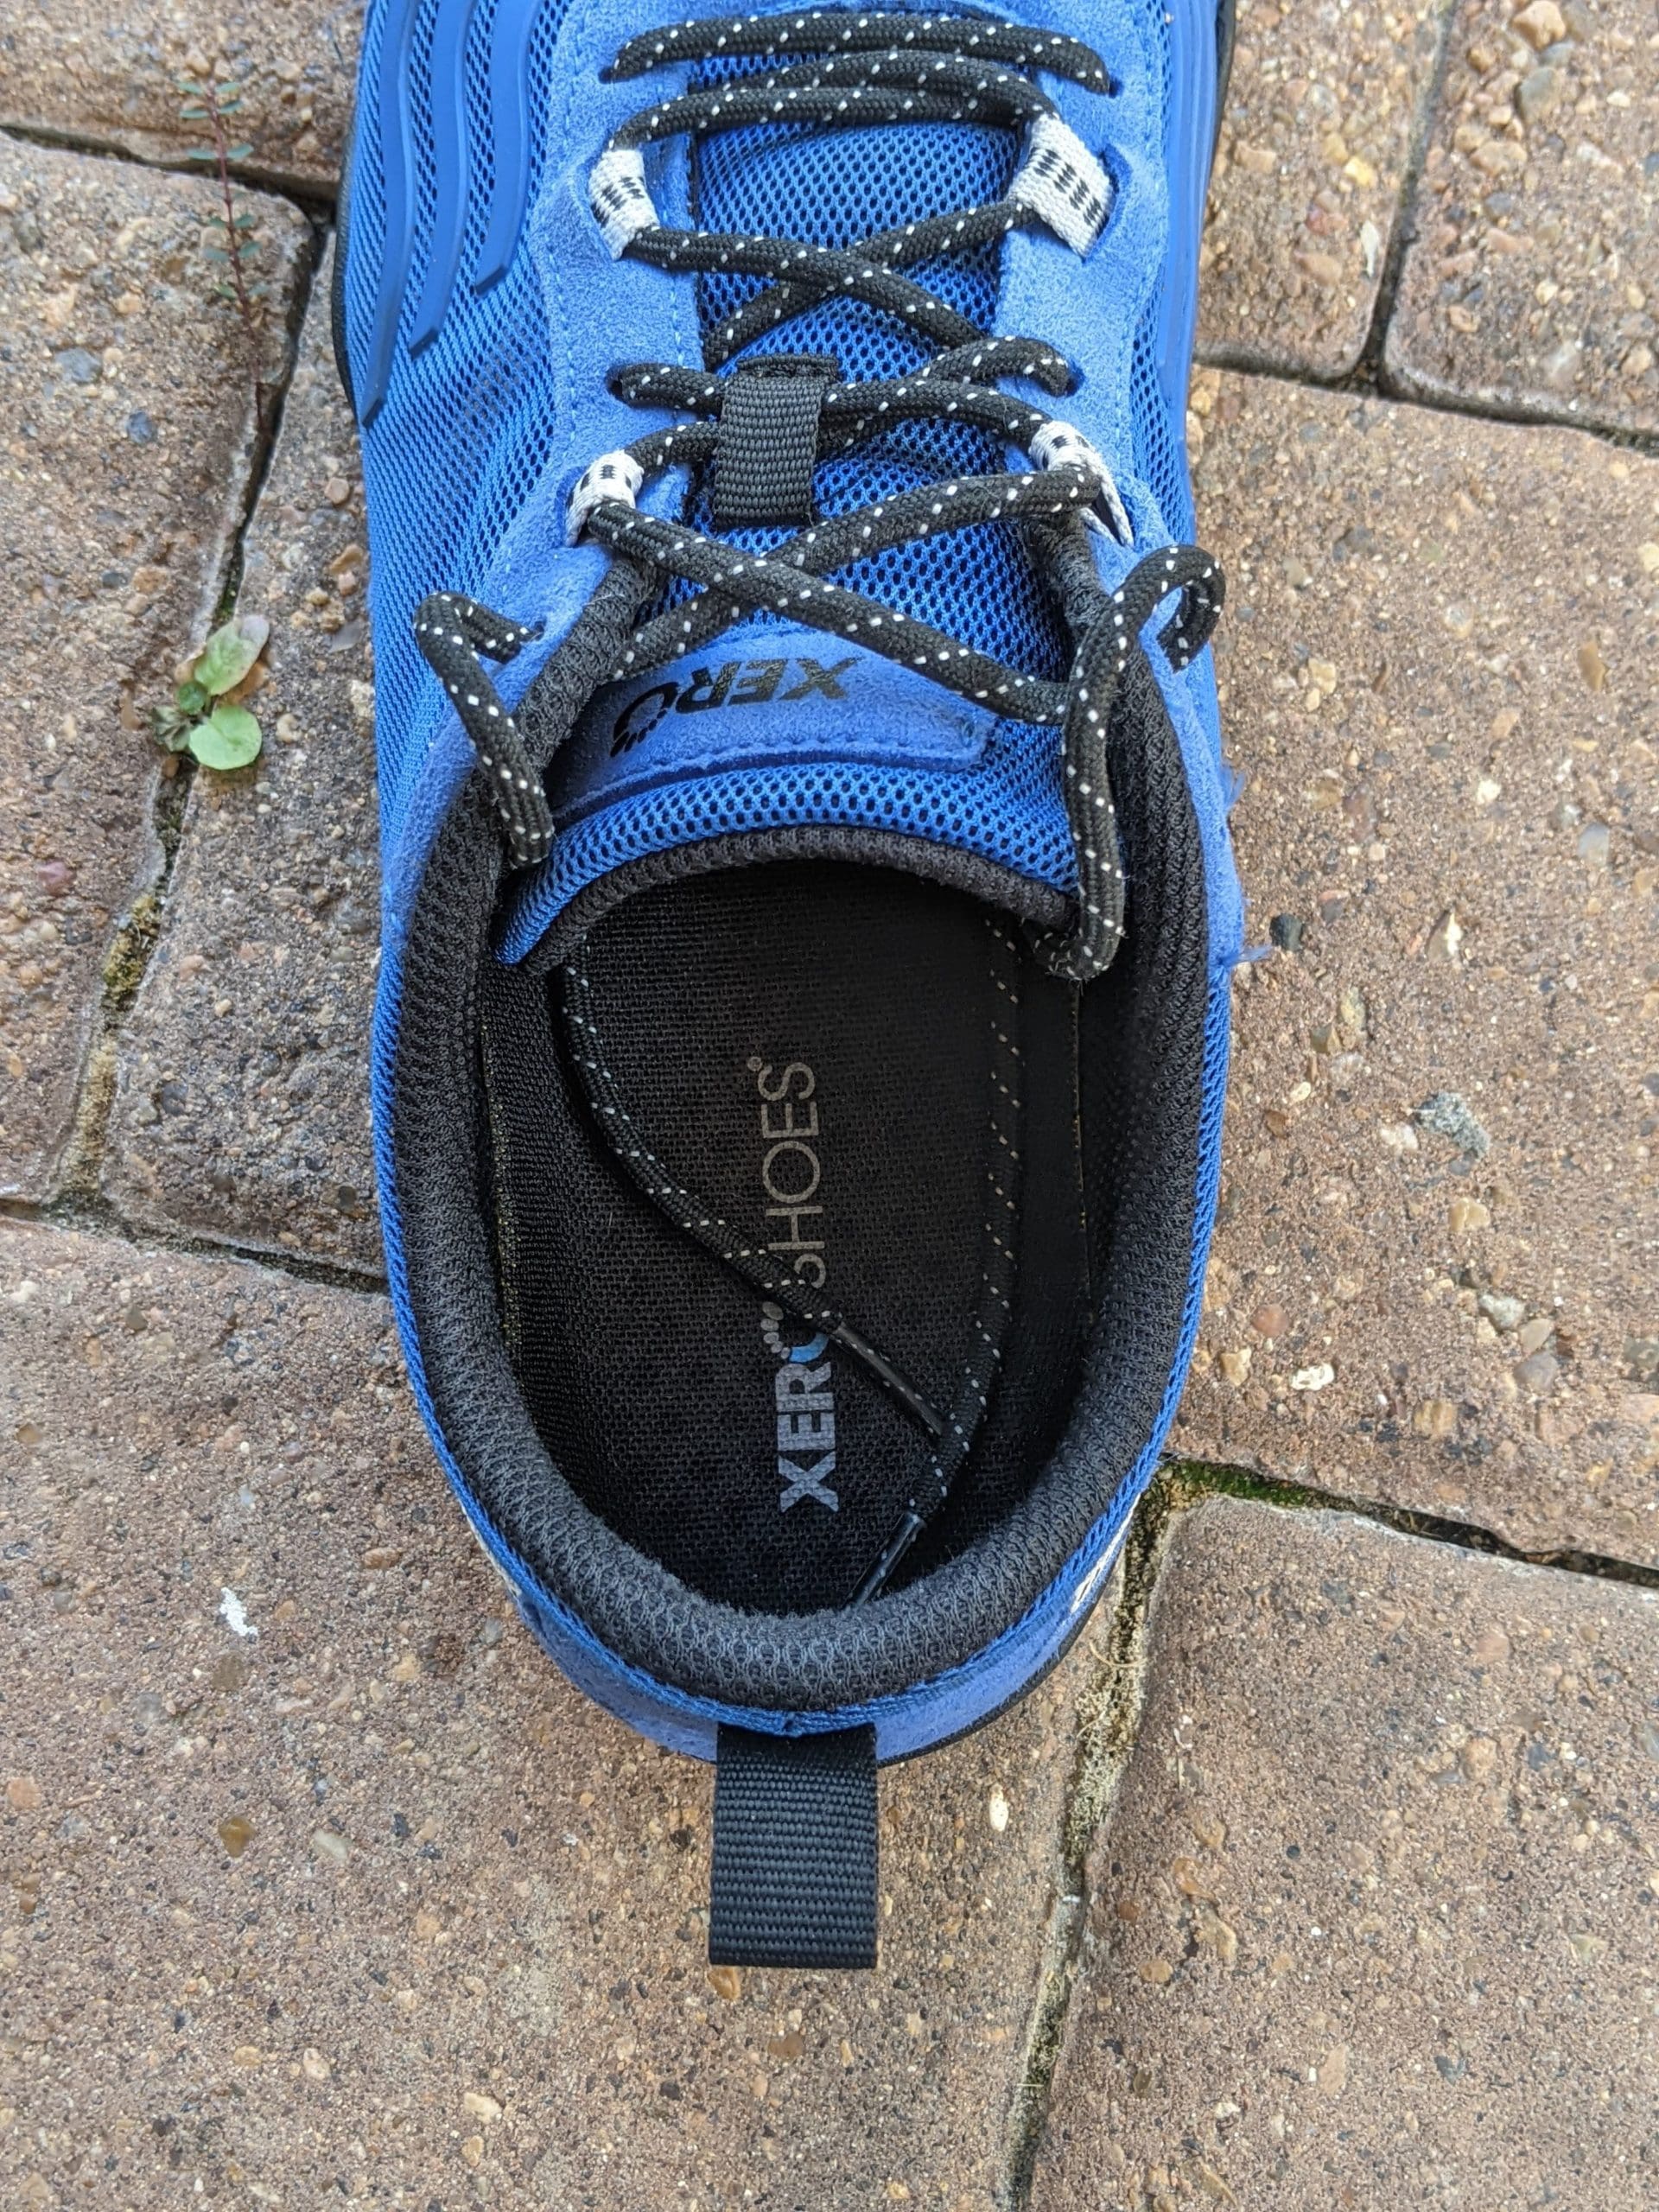 Xero Shoes 360 heel opening